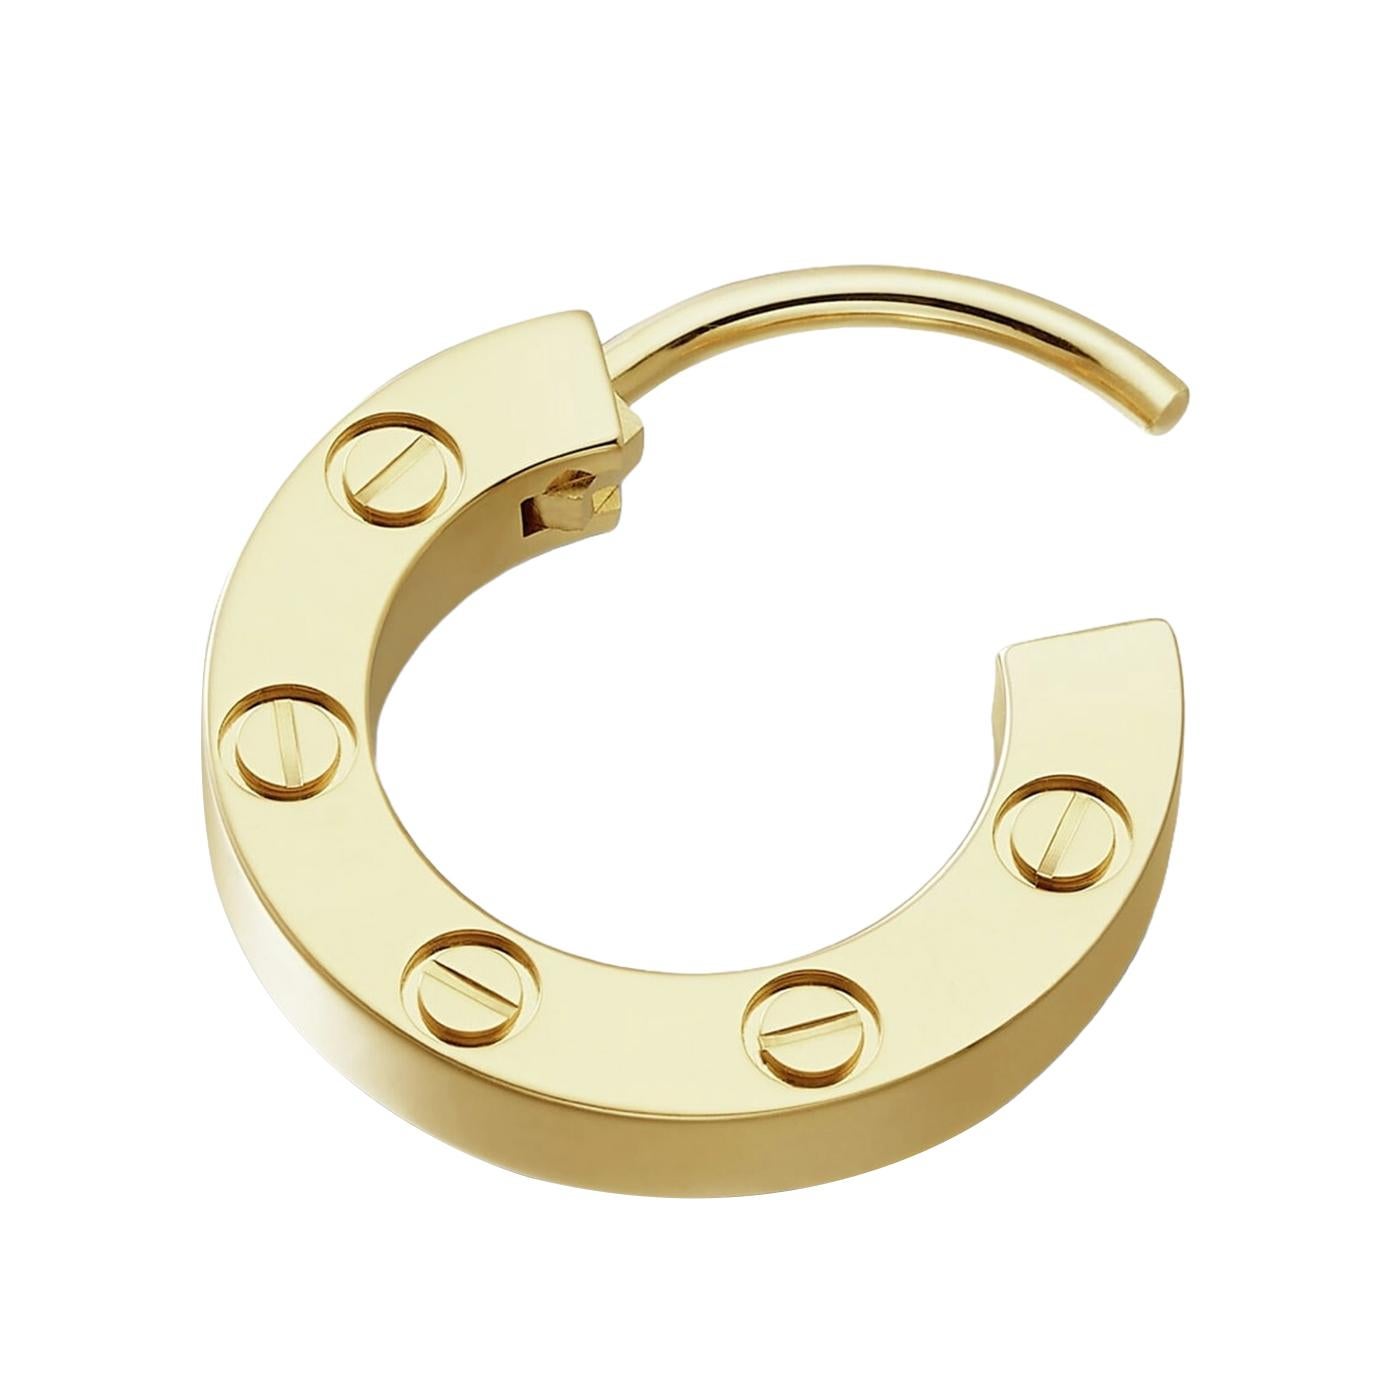 Cartier LOVE einzelner Ohrring, Gelbgold 750/1000. Durchmesser 12 mm. Einzelverkauf.

Einzelheiten:
Marke: Cartier
Stil: Liebes-Ohrring
MATERIAL: Gelbgold (750/1000)
Durchmesser: 12 mm
Thema: Romantik, Liebe
Umfang der Lieferung: Box und